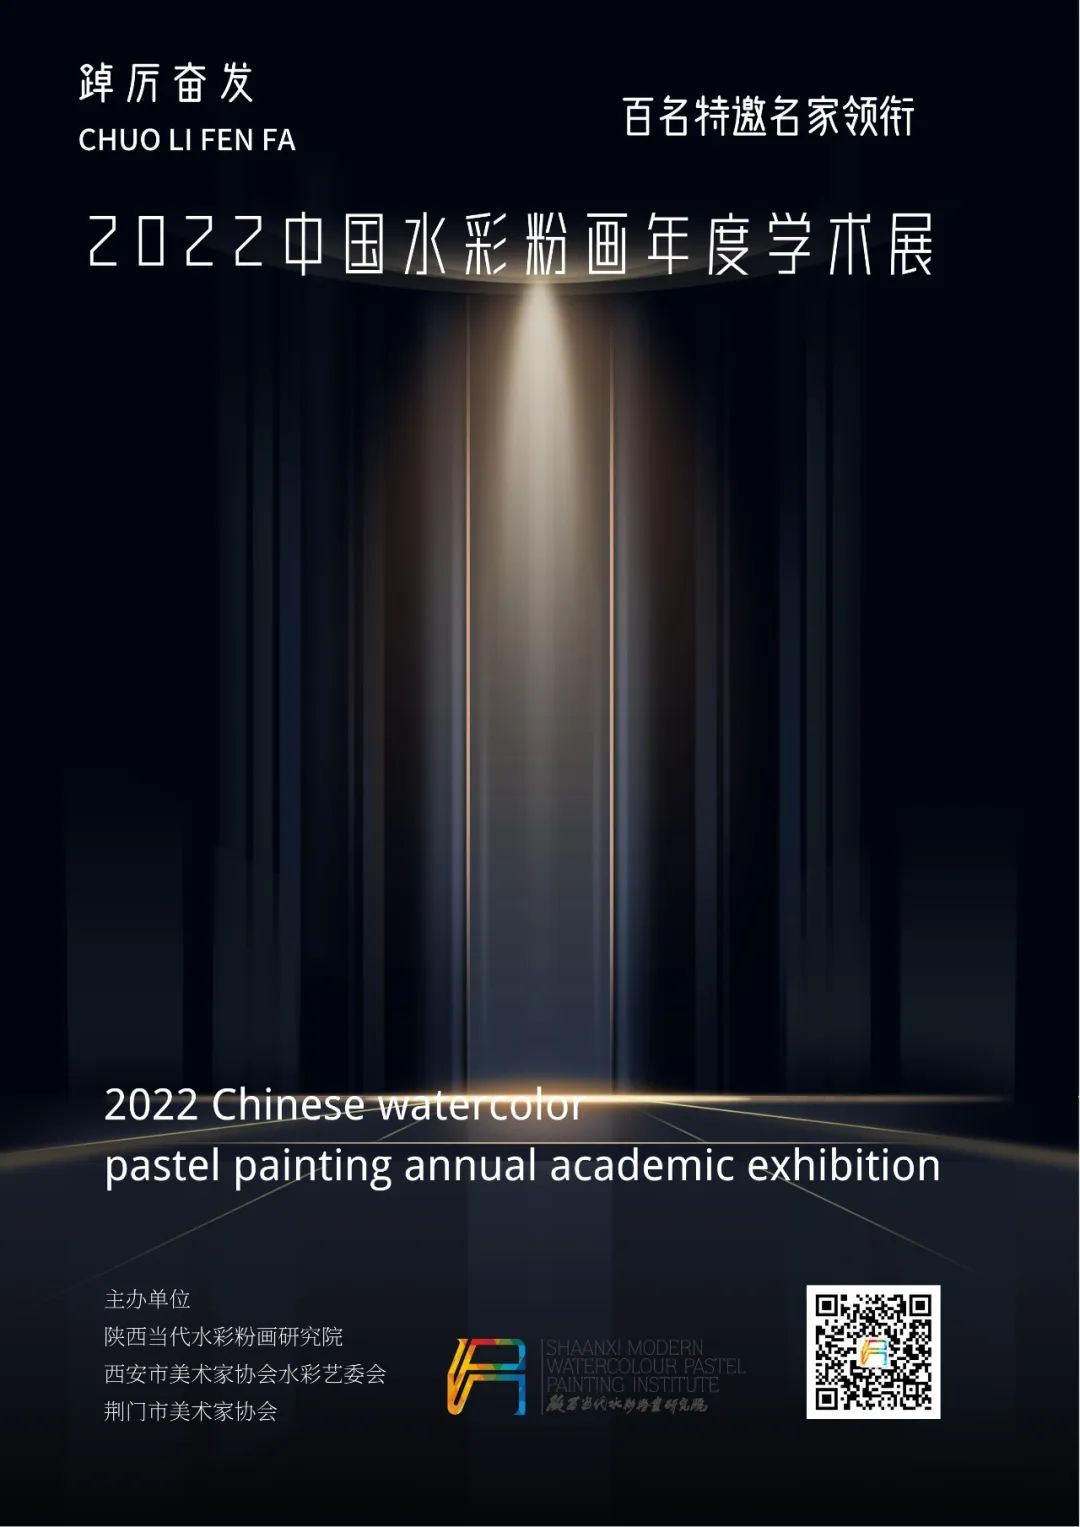 踔厉奋发·2022中国水彩粉画年度学术展征稿通知 | 百名特邀艺术家领衔